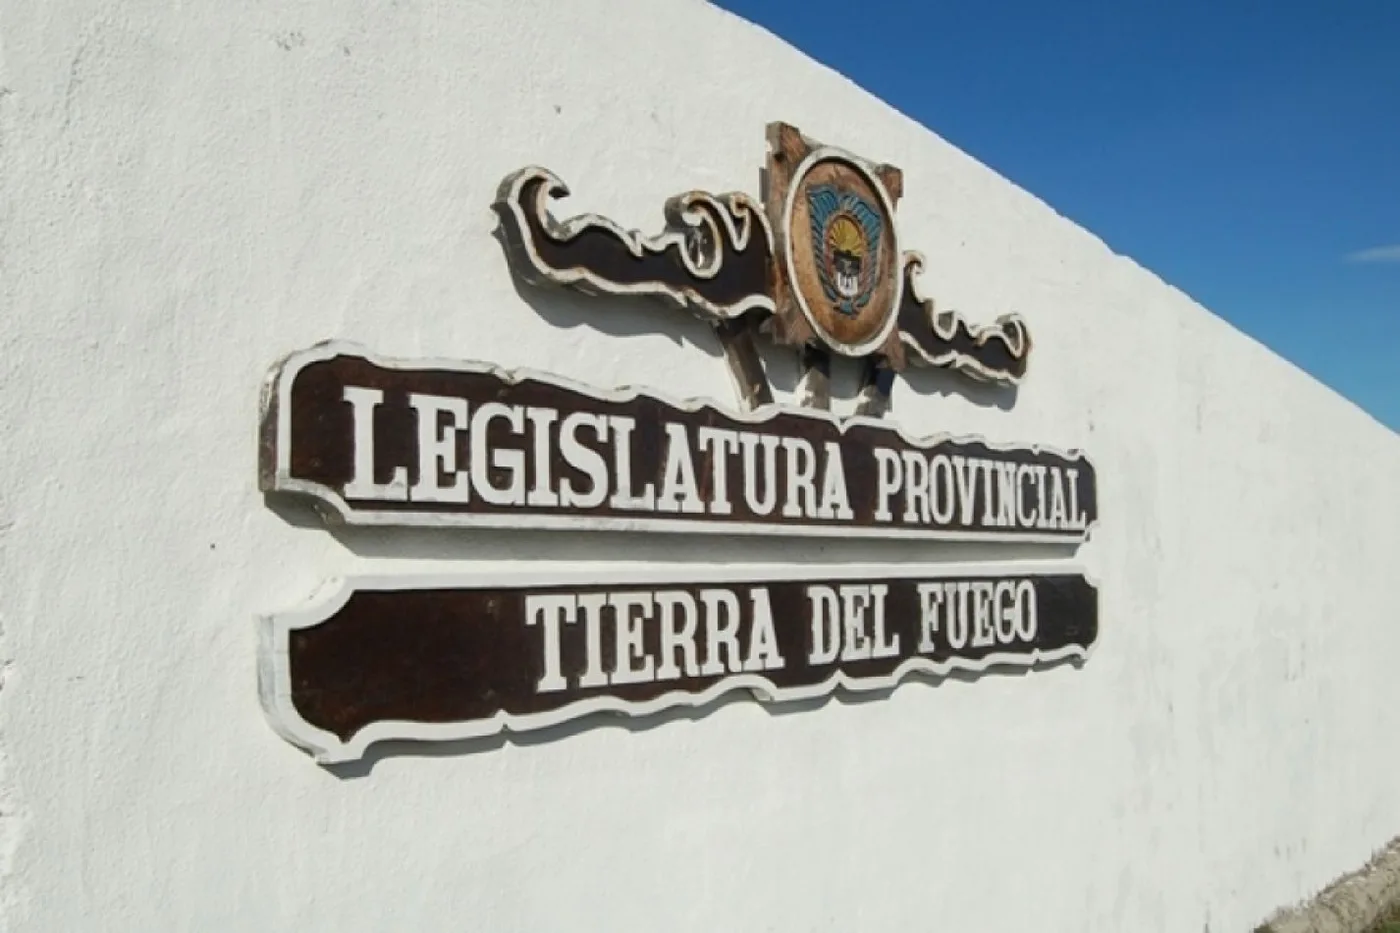 Legislatura Provincial